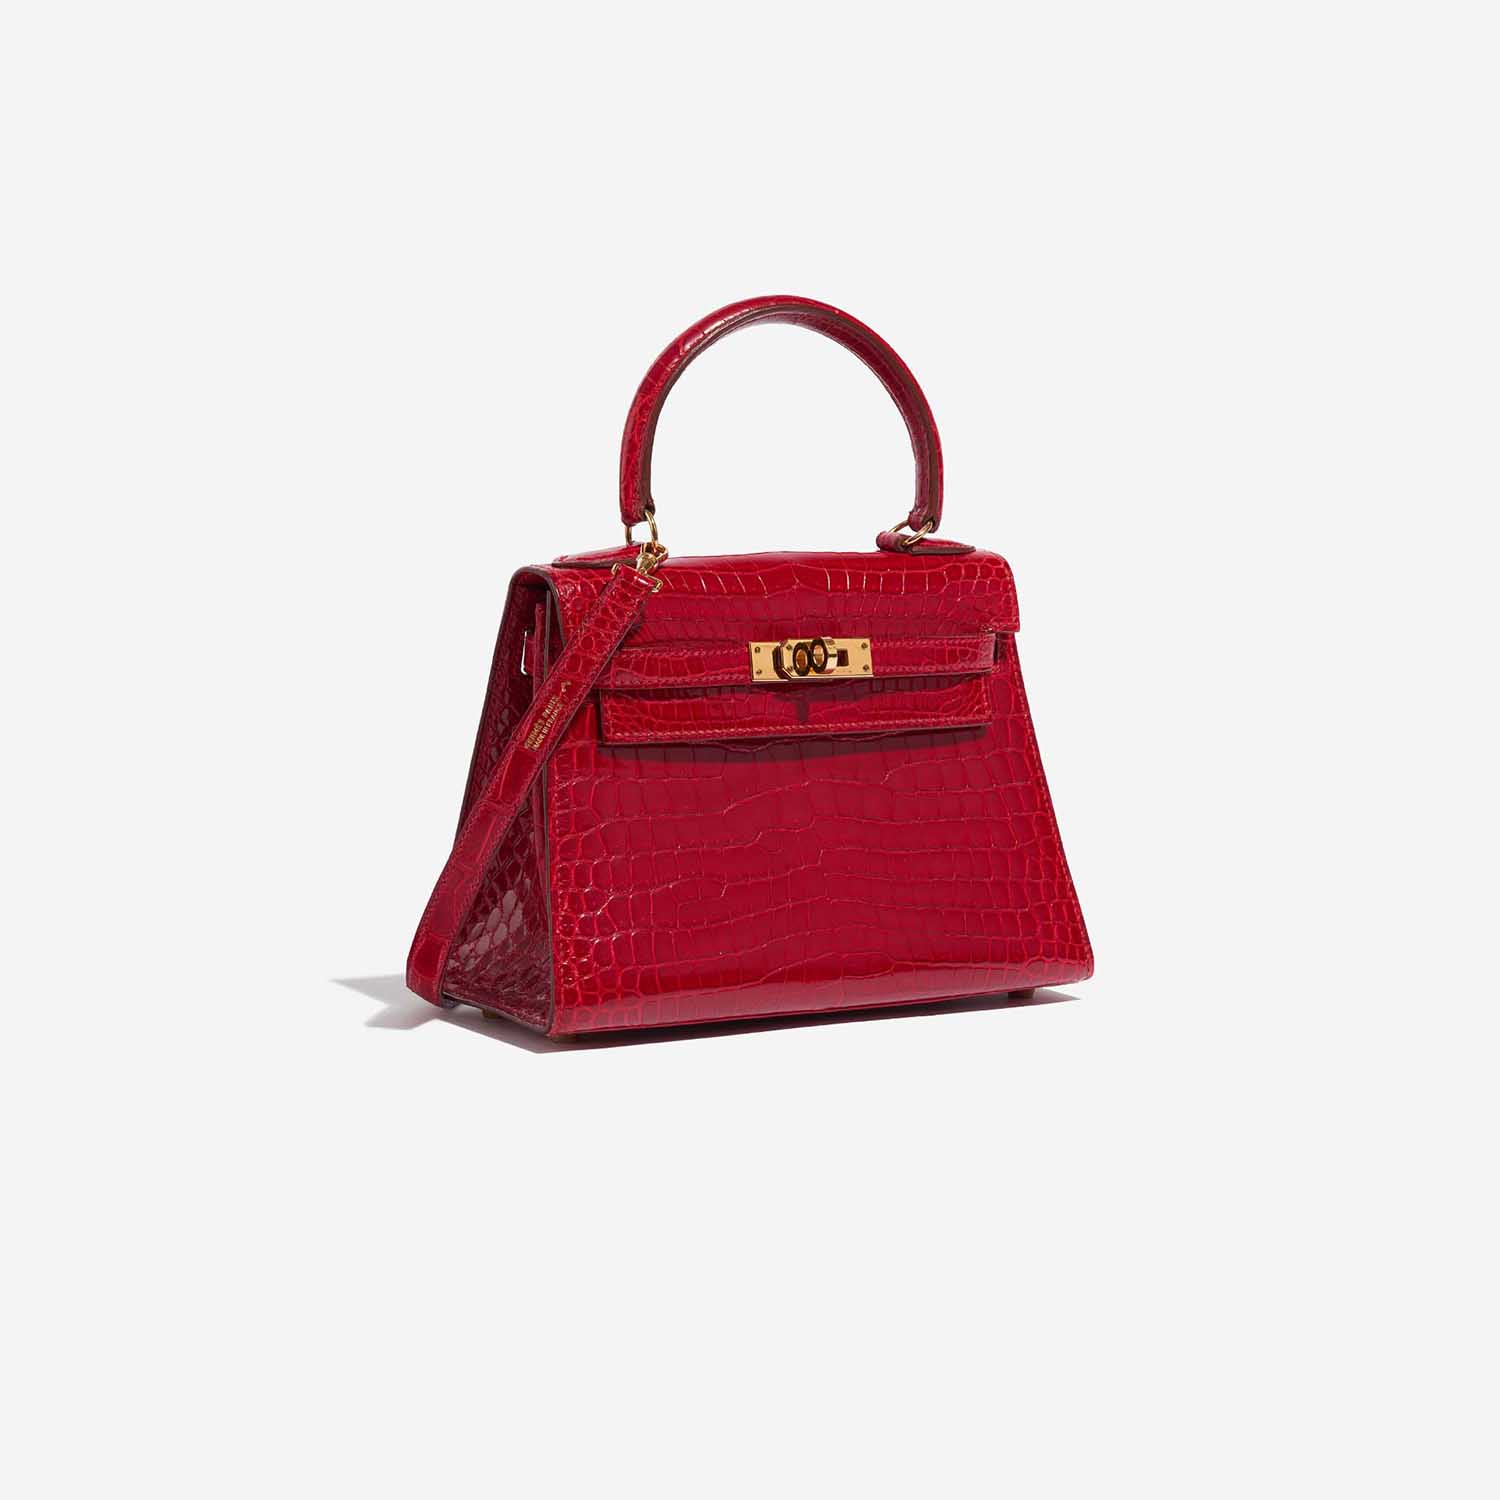 Pre-owned Hermès Tasche Kelly Mini Porosus Crocodile Braise Red Side Front | Verkaufen Sie Ihre Designer-Tasche auf Saclab.com